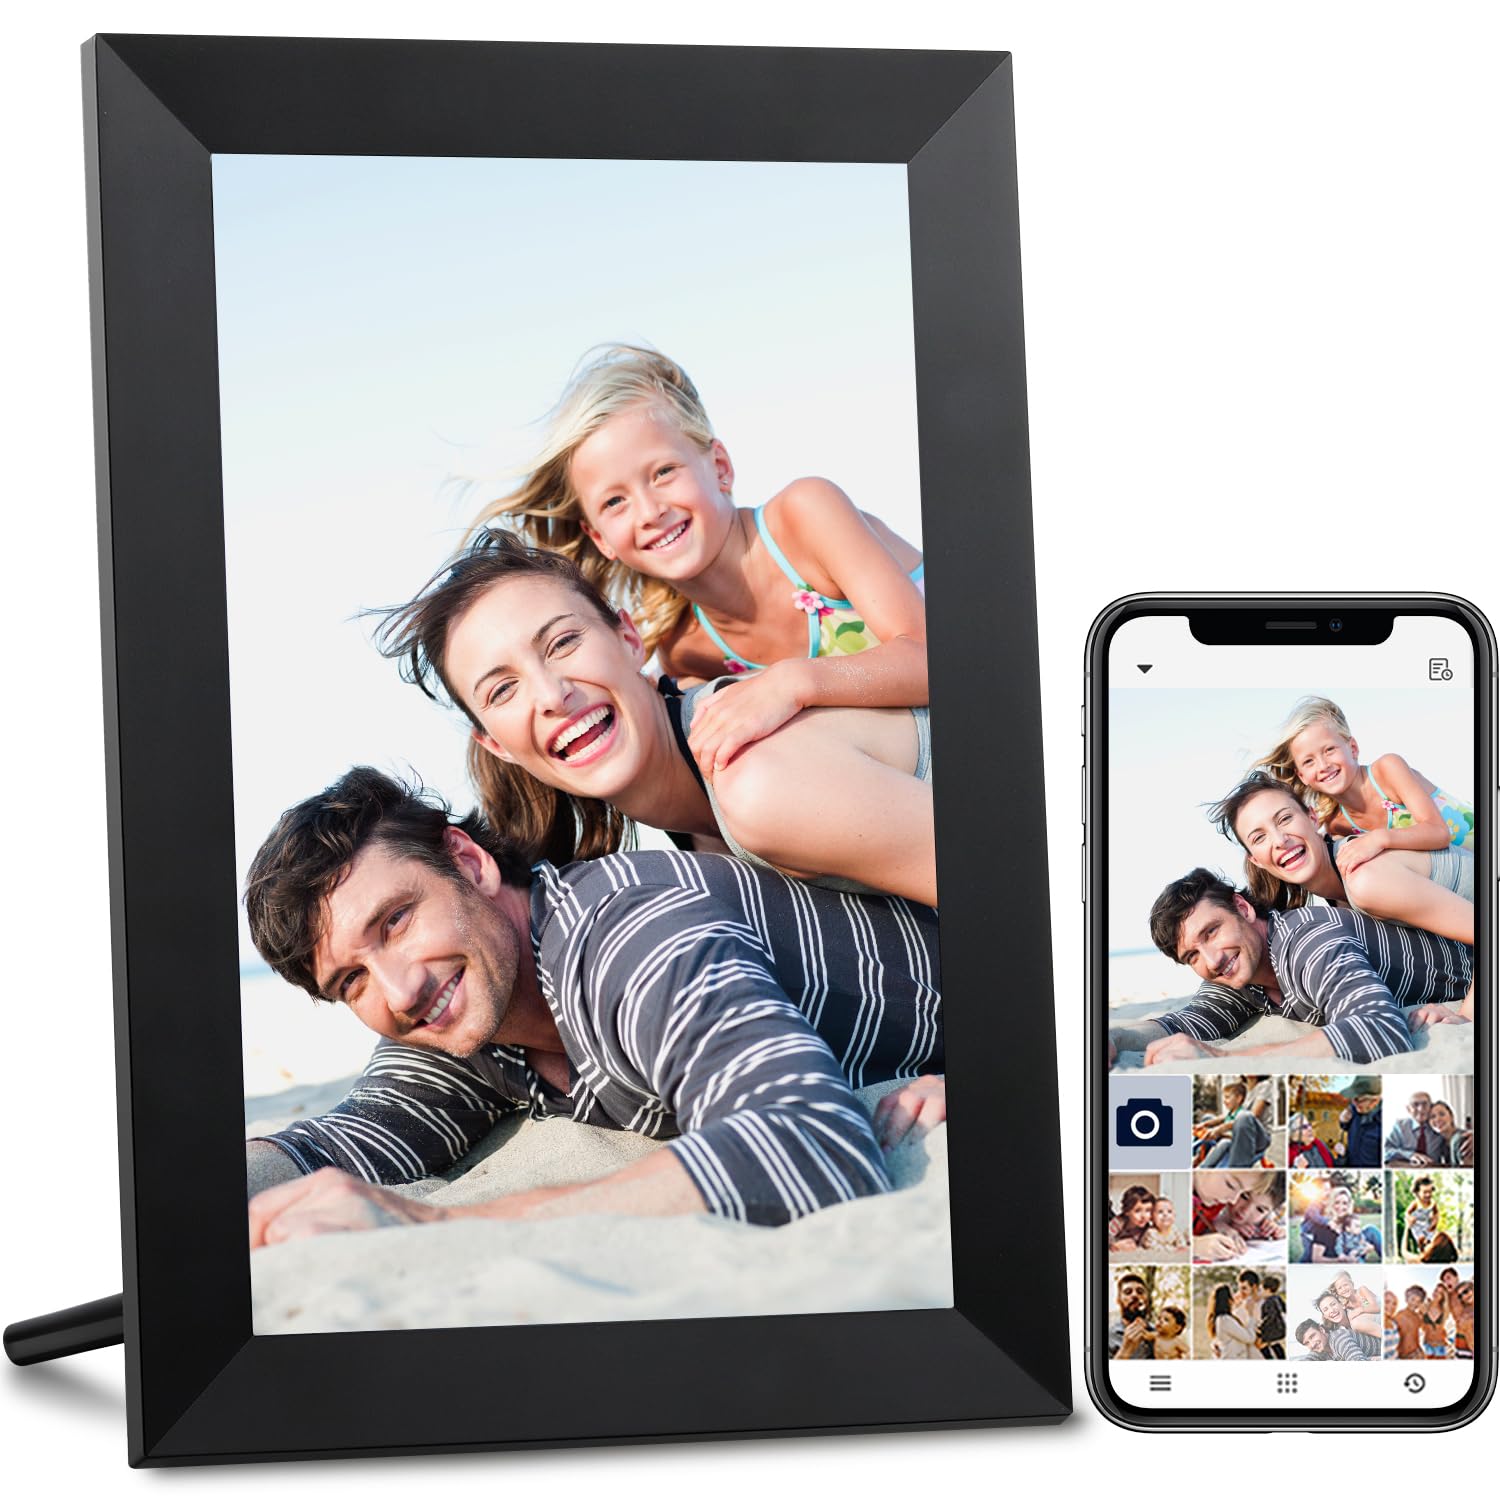 AEEZO WiFi Digitaler Bilderrahmen 10.1 Zoll IPS Touchscreen, Automatische Drehung, Einfache Einrichtung zur Gemeinsamen Nutzung von Fotos und Videos, 16 GB Digitale Bilderrahmen(Schwarz)